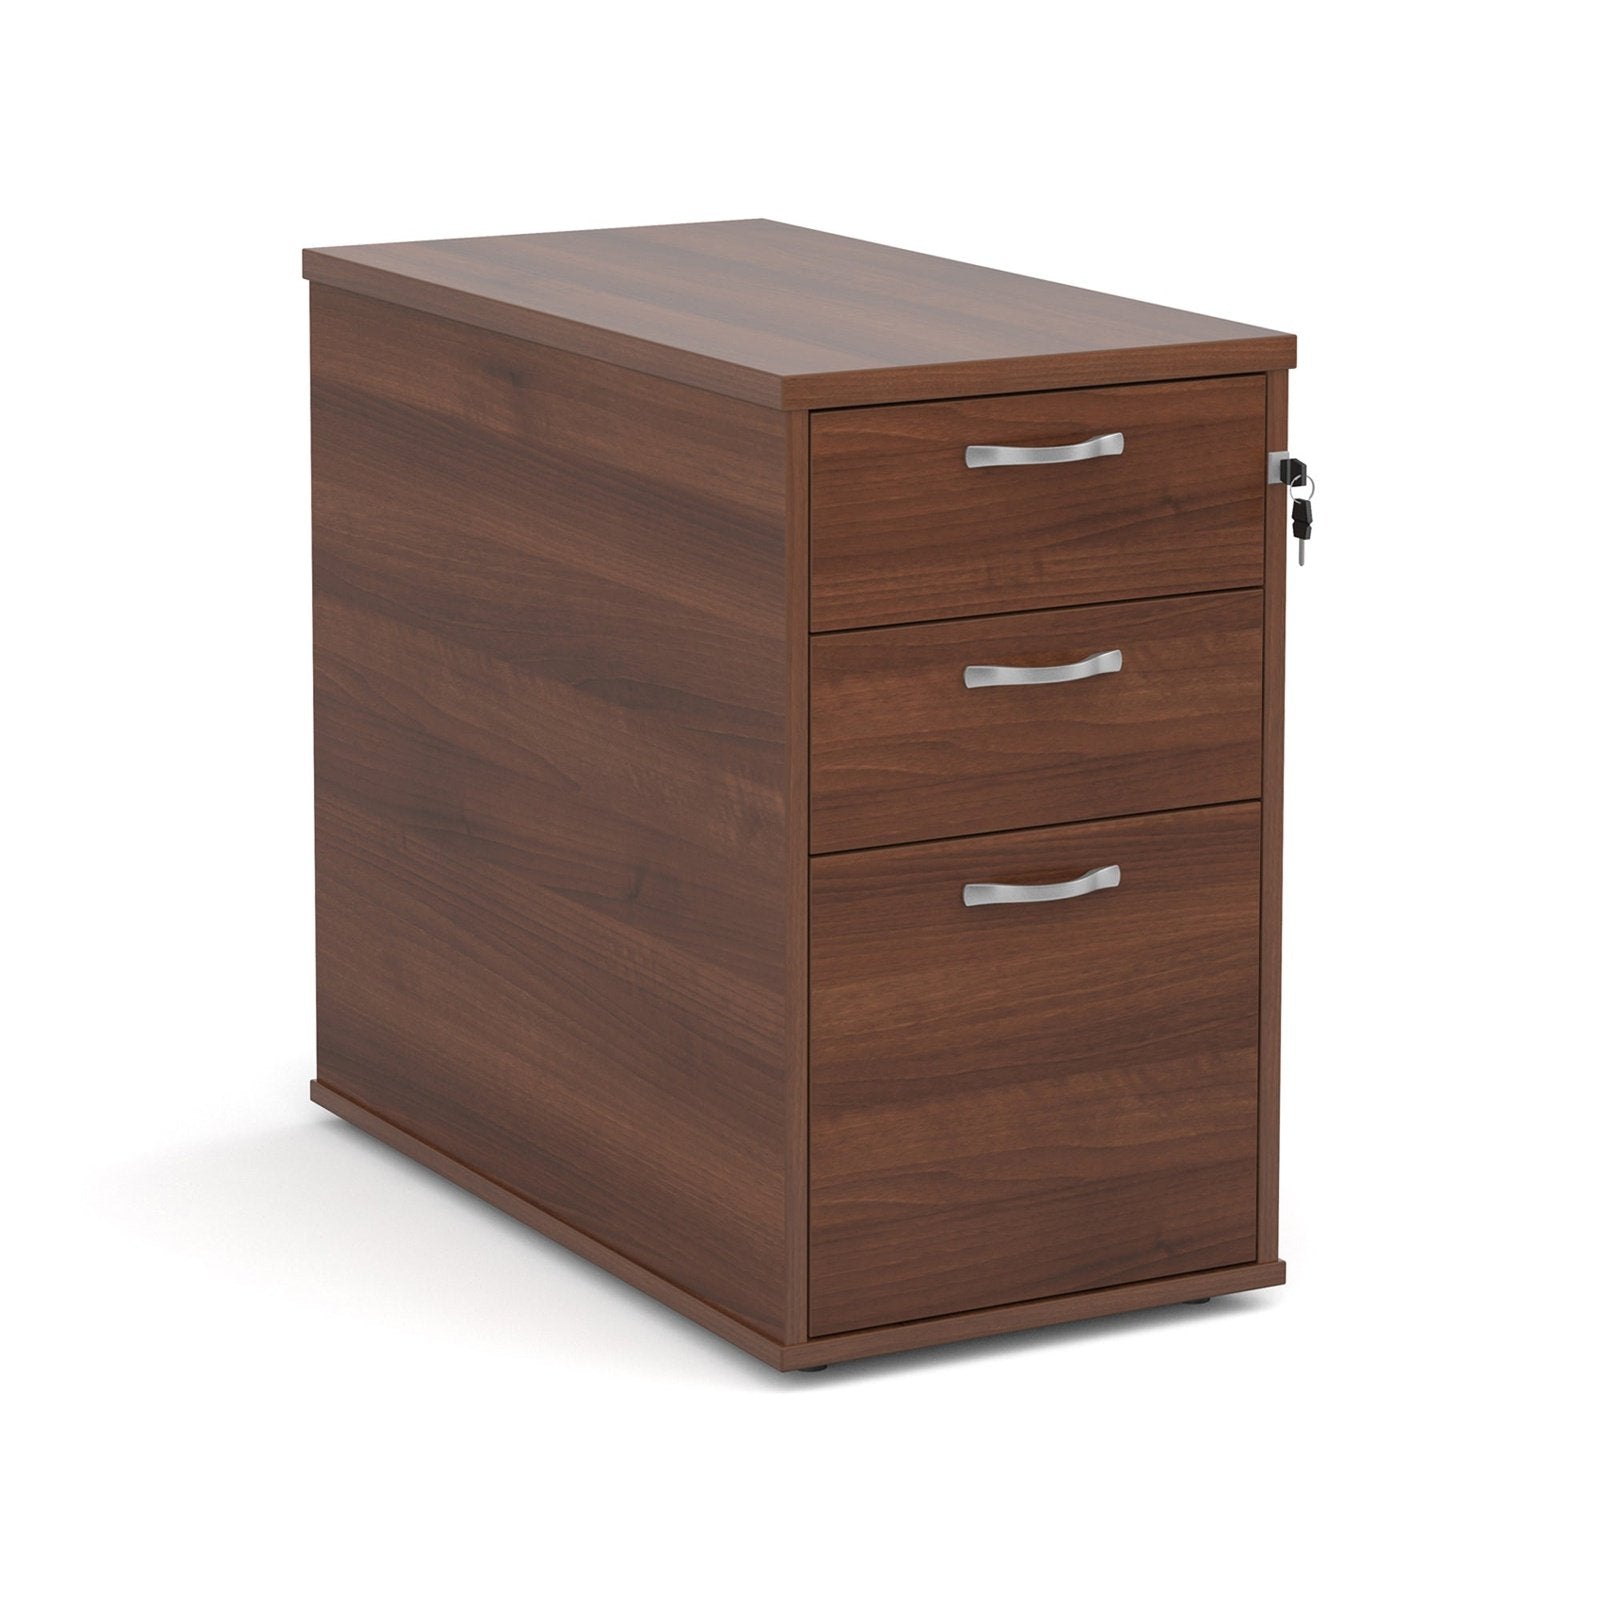 Desk high 3 drawer pedestal - Office Products Online